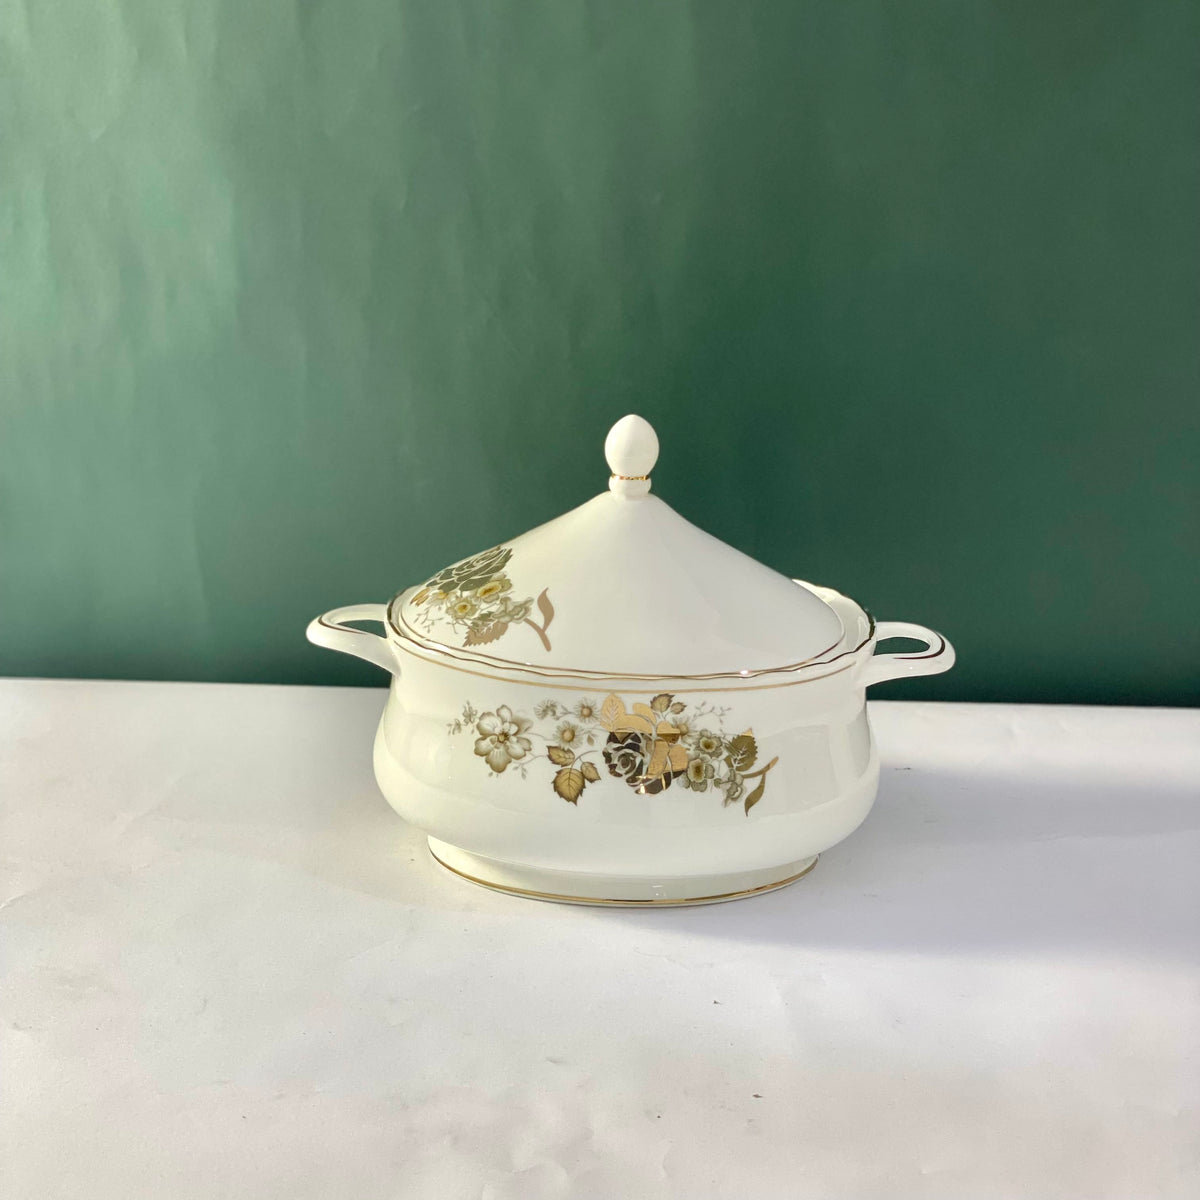 Ceramic Porcelain Serving Bowl with Lid - Design G